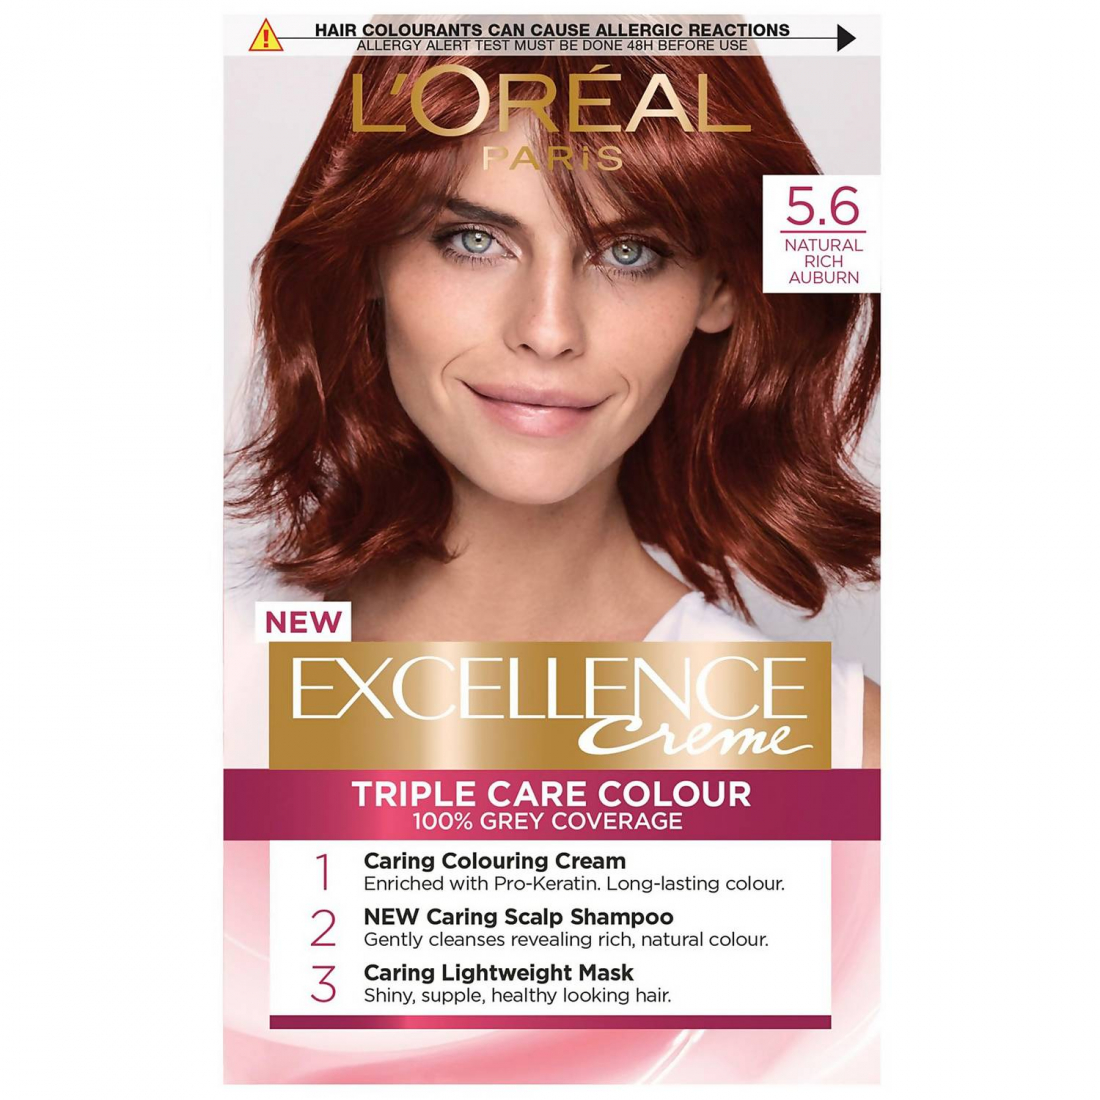 'Excellence' Hair Dye - 5.6 Natural Rich Auburn